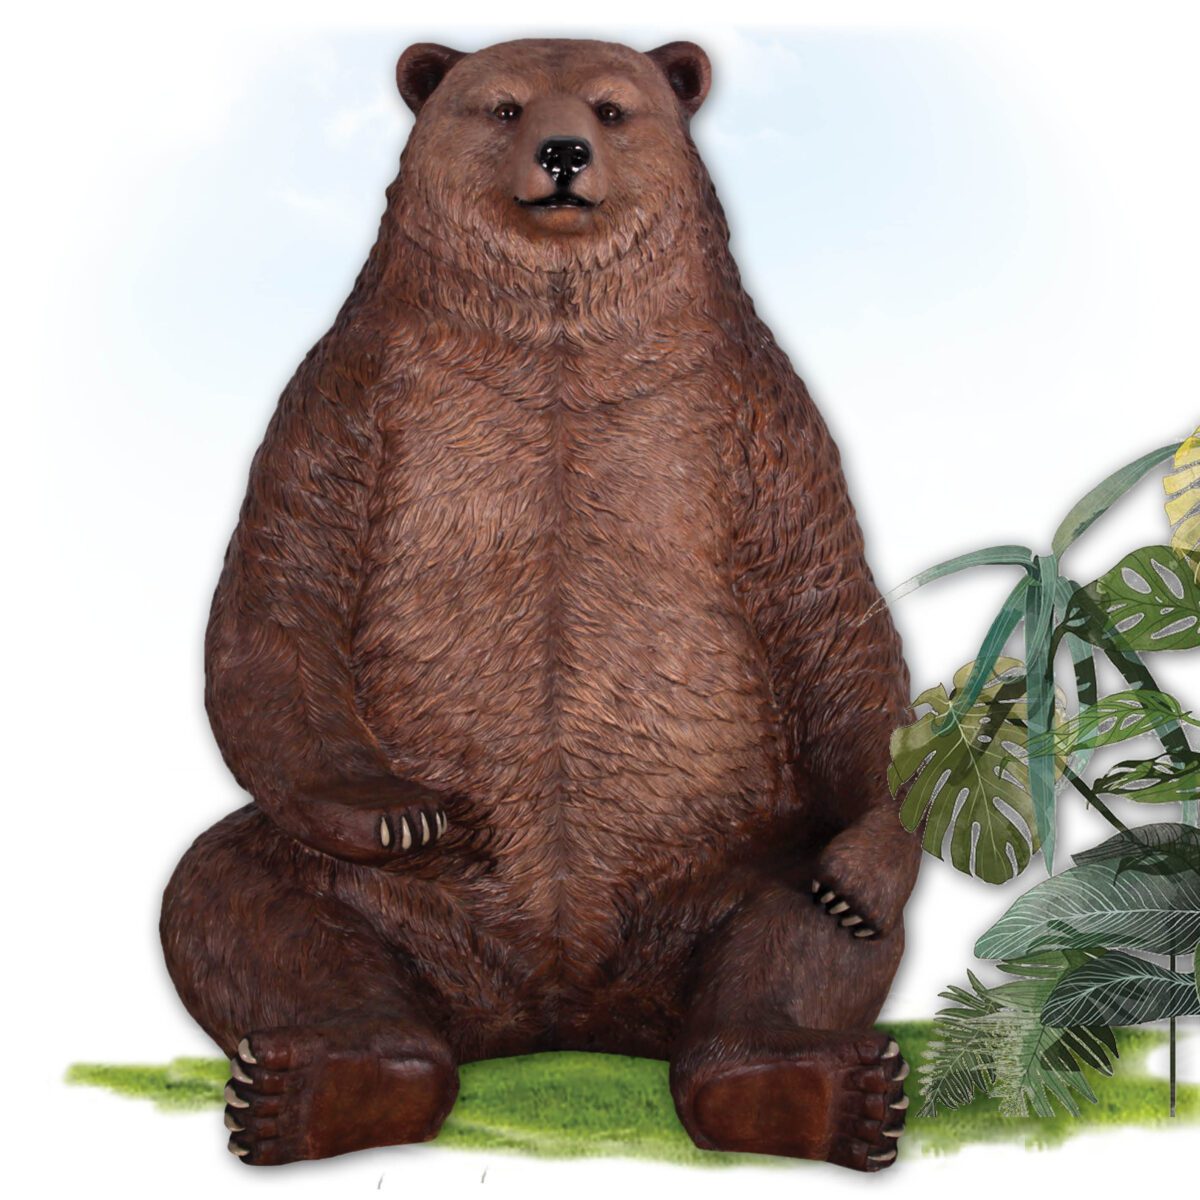 brown bear sitting